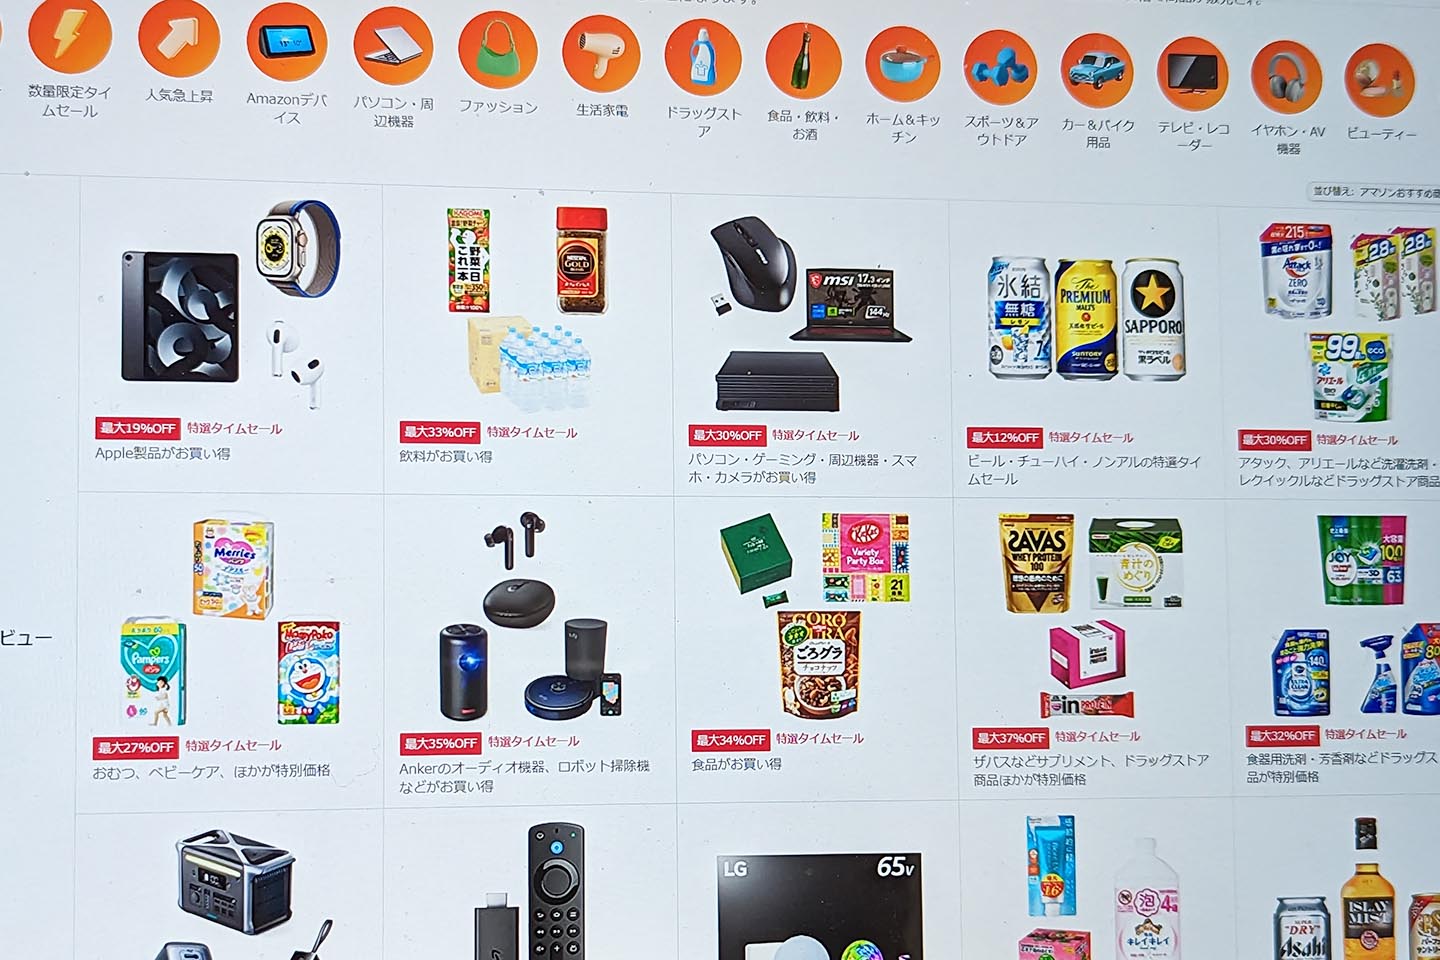 Amazon “Time Sale Festival” puesto a la venta como iPad, PC, bebidas-Impress Watch